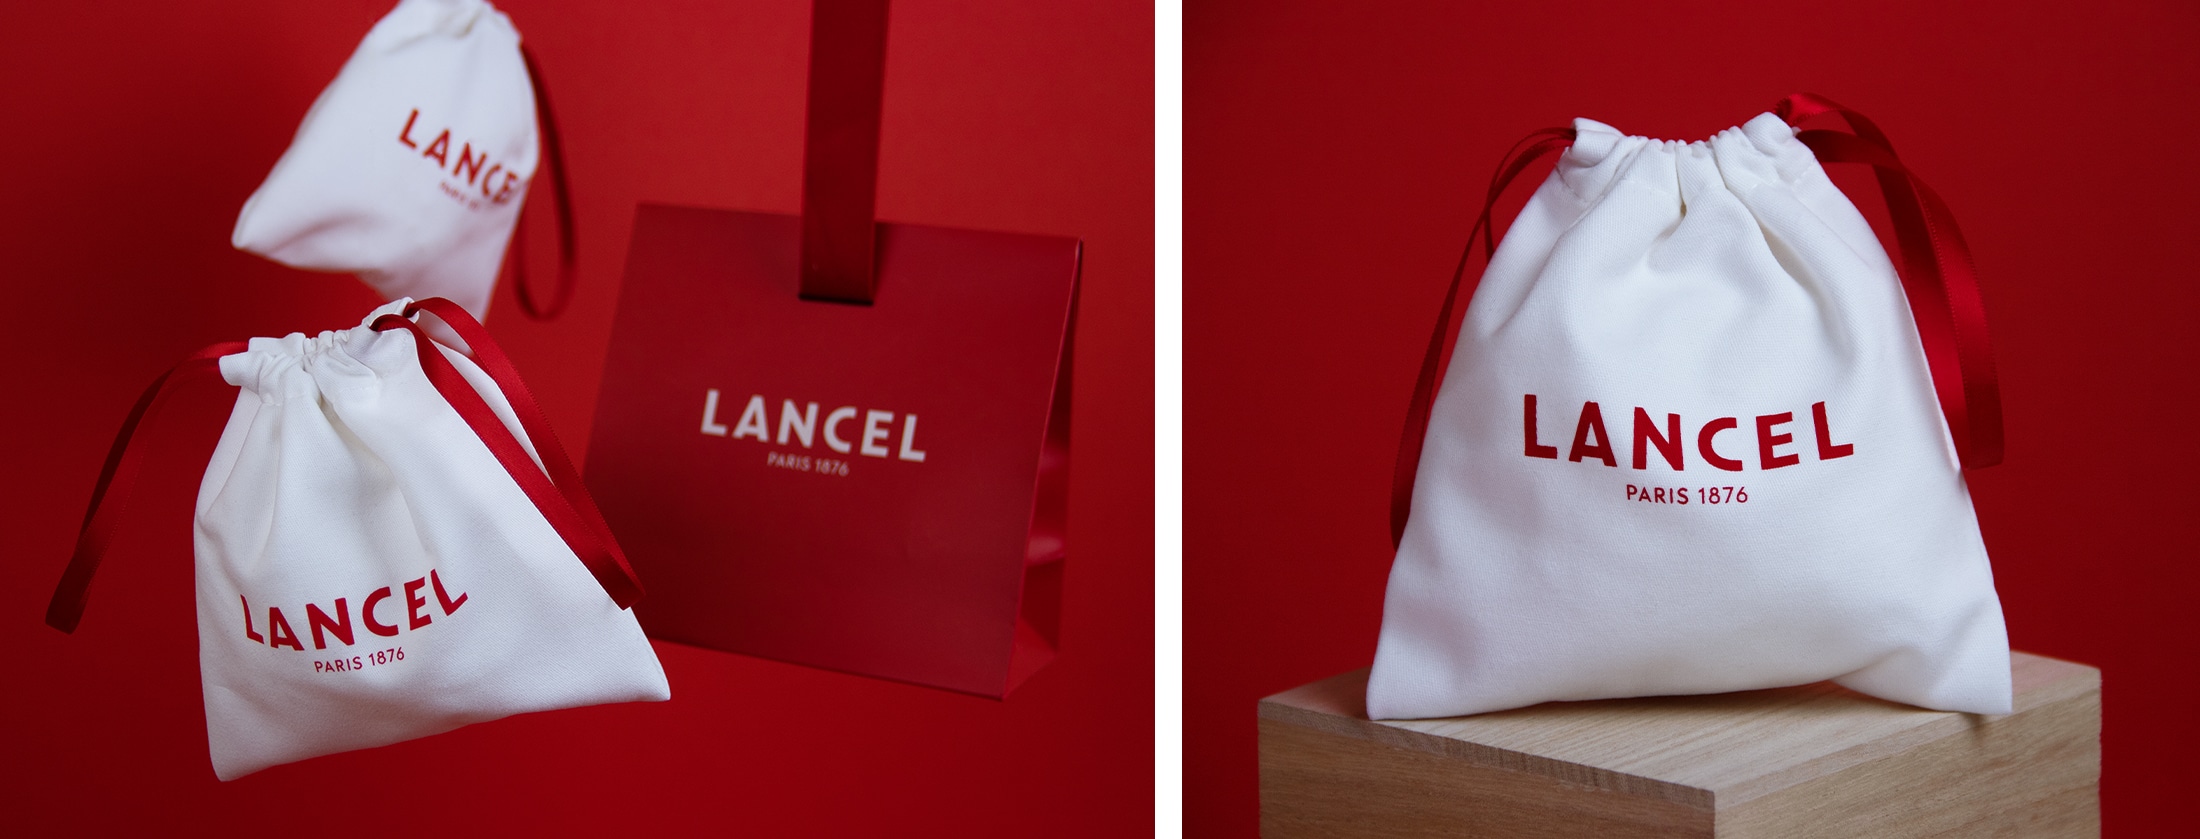 Pochon Lancel en coton blanc avec ruban rouge pour les petits produits.